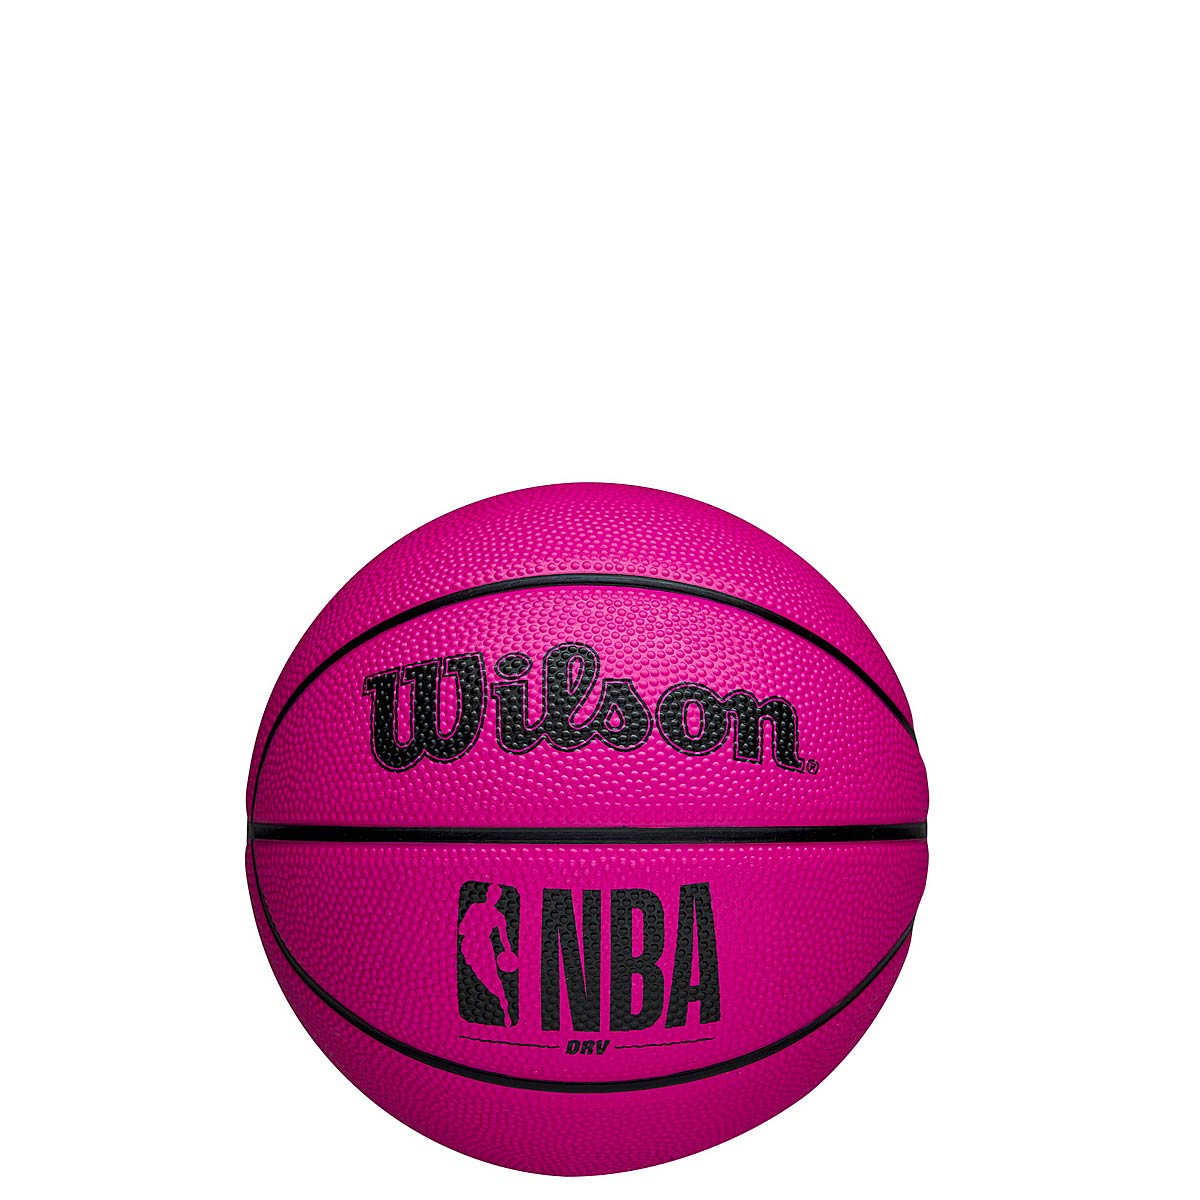 Image of Wilson NBA Mini Basketball, Pink